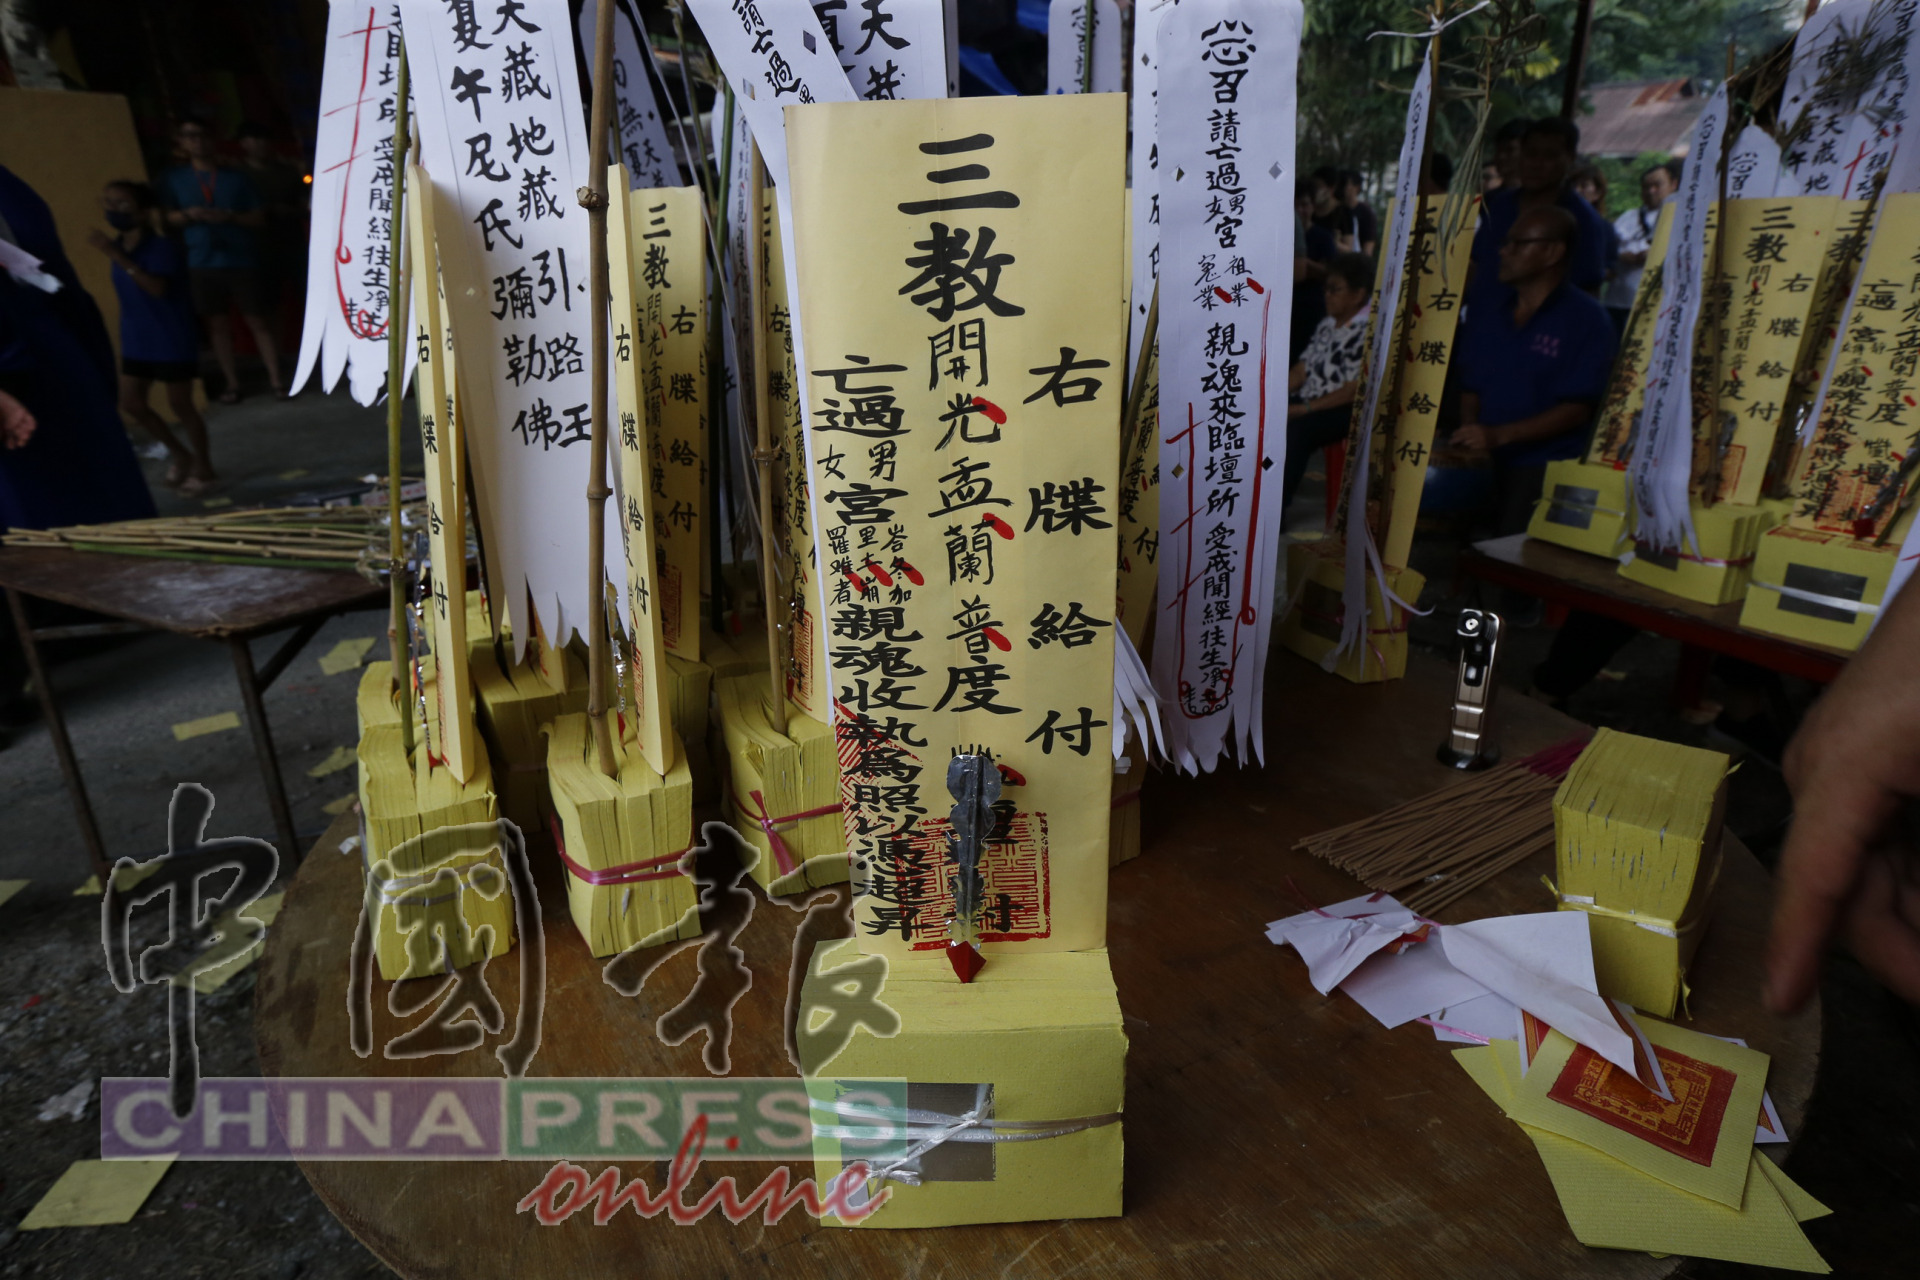 在招魂仪式，牒位注明峇冬加里露营地土崩事故的罹难者。